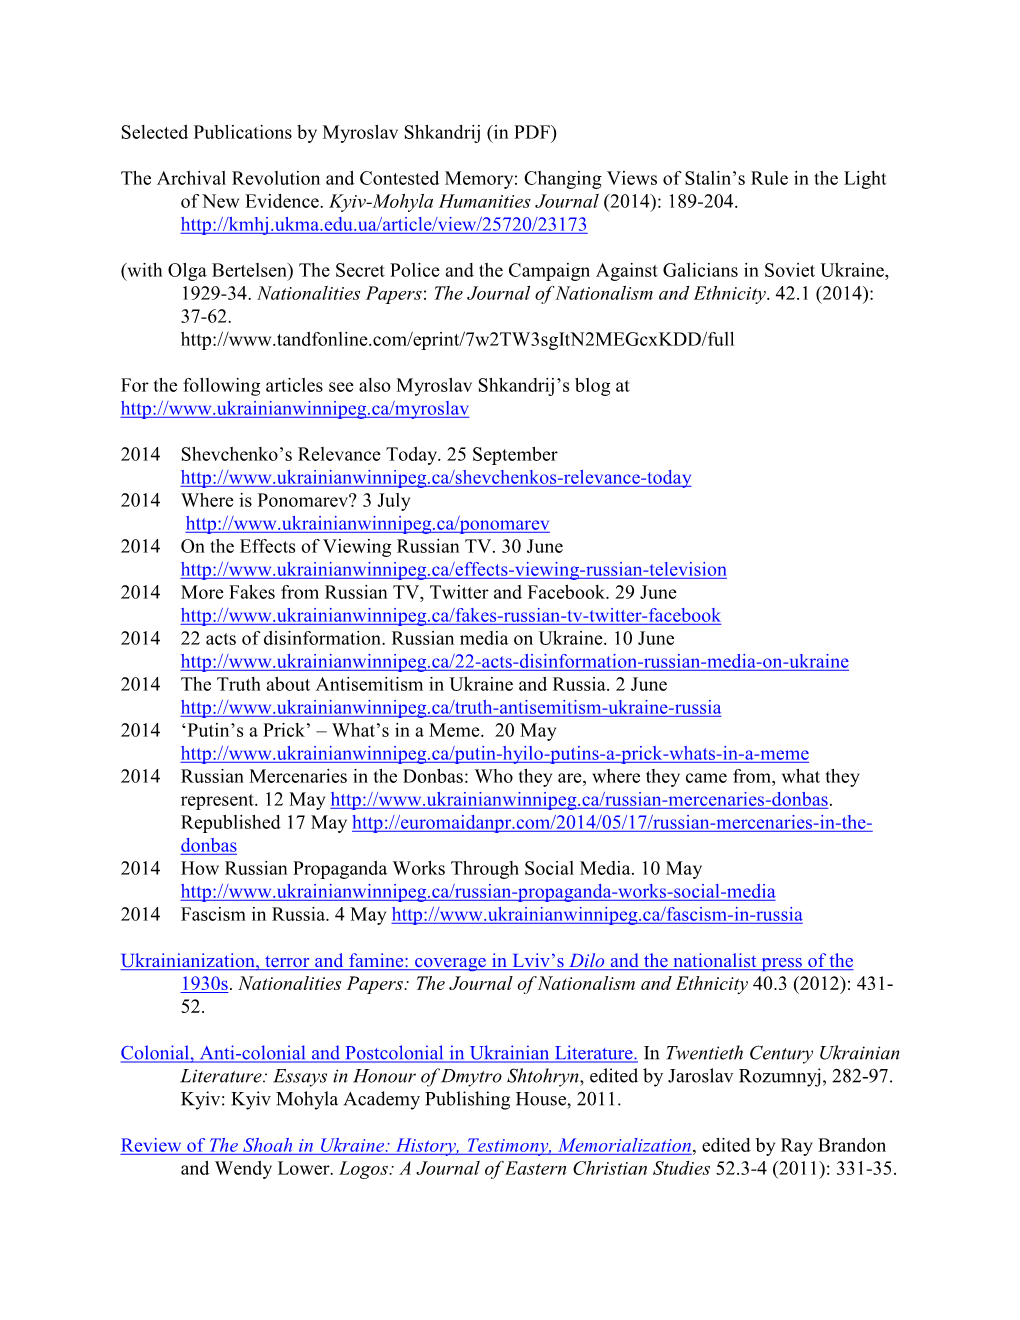 Selected Publications by Myroslav Shkandrij (In PDF)